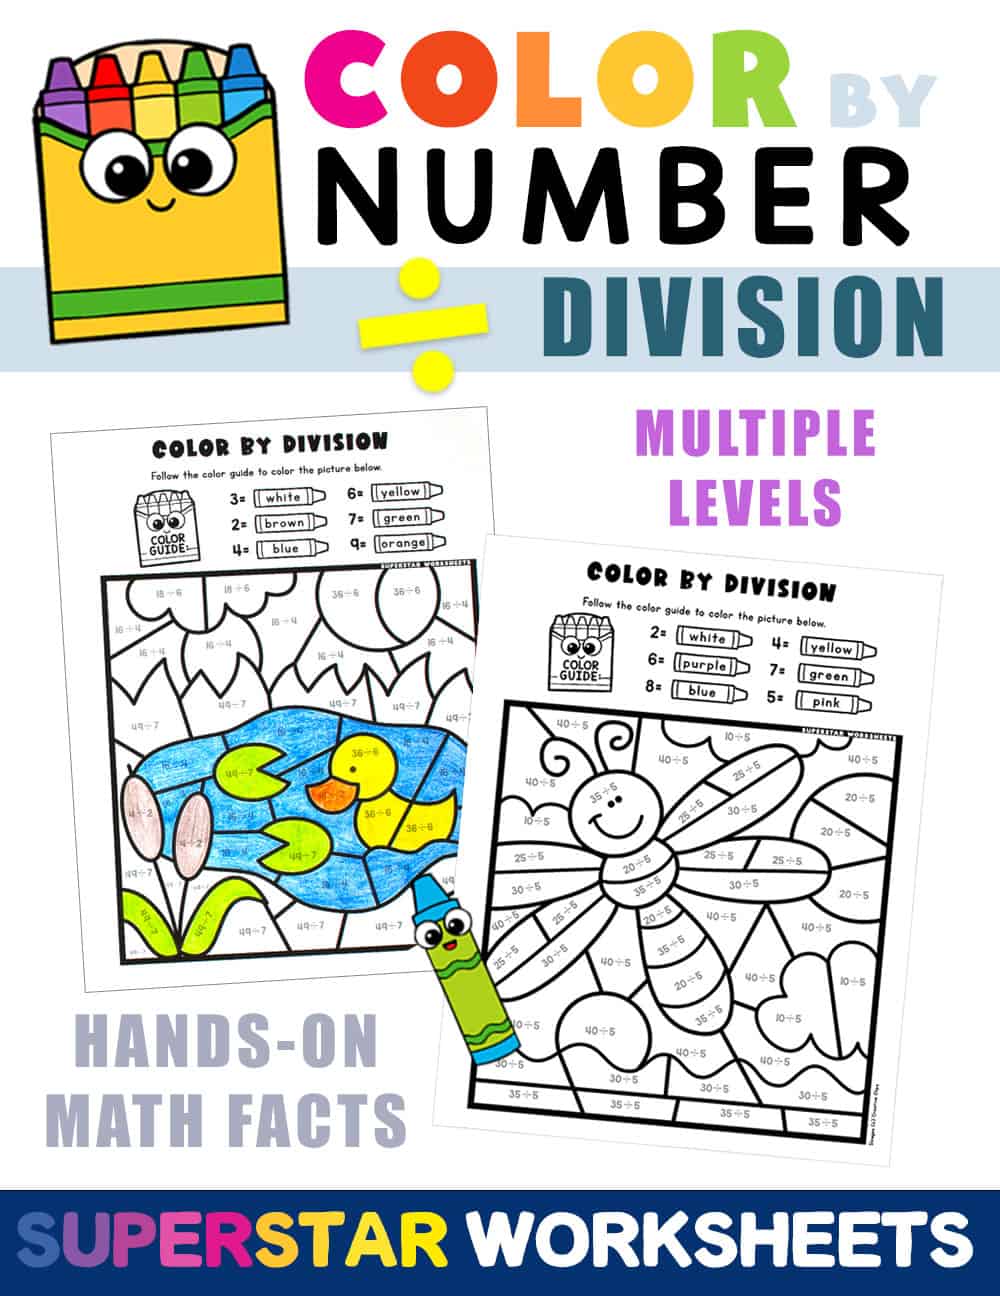 division-color-by-number-superstar-worksheets